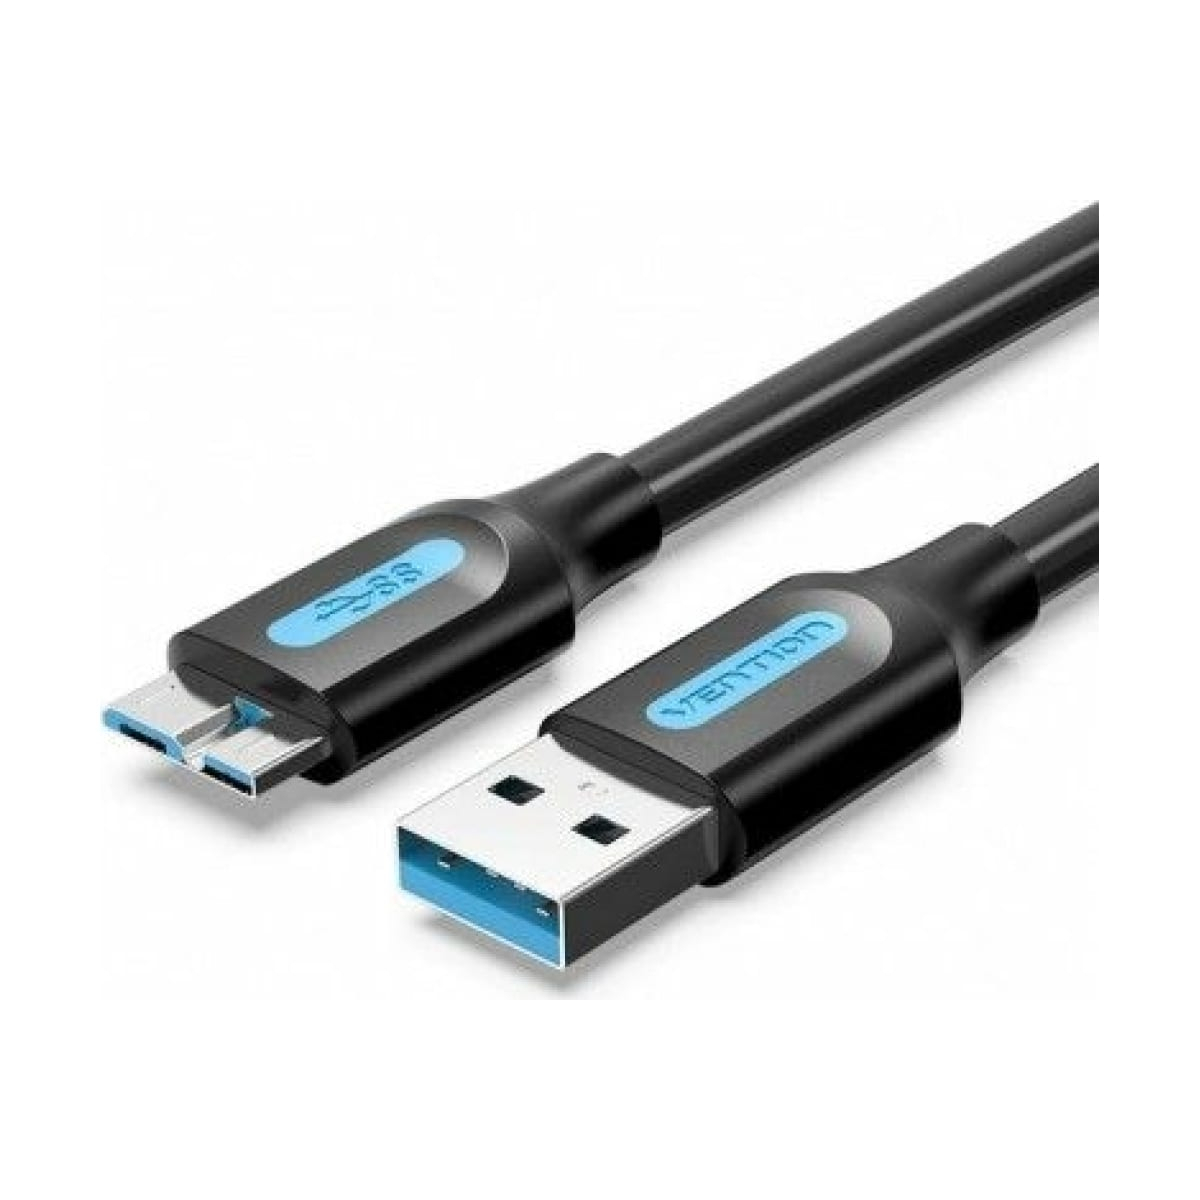 Кабель Vention USB 3.0 AM/micro B - 1м. (COPBF) usb зарядный кабель для samsung galaxy tab2 gt p3113ts tablet p3110 p3100 p5100 p5110 p6200 p7500 n8000 p6800 p1000 кабель для синхронизации данных